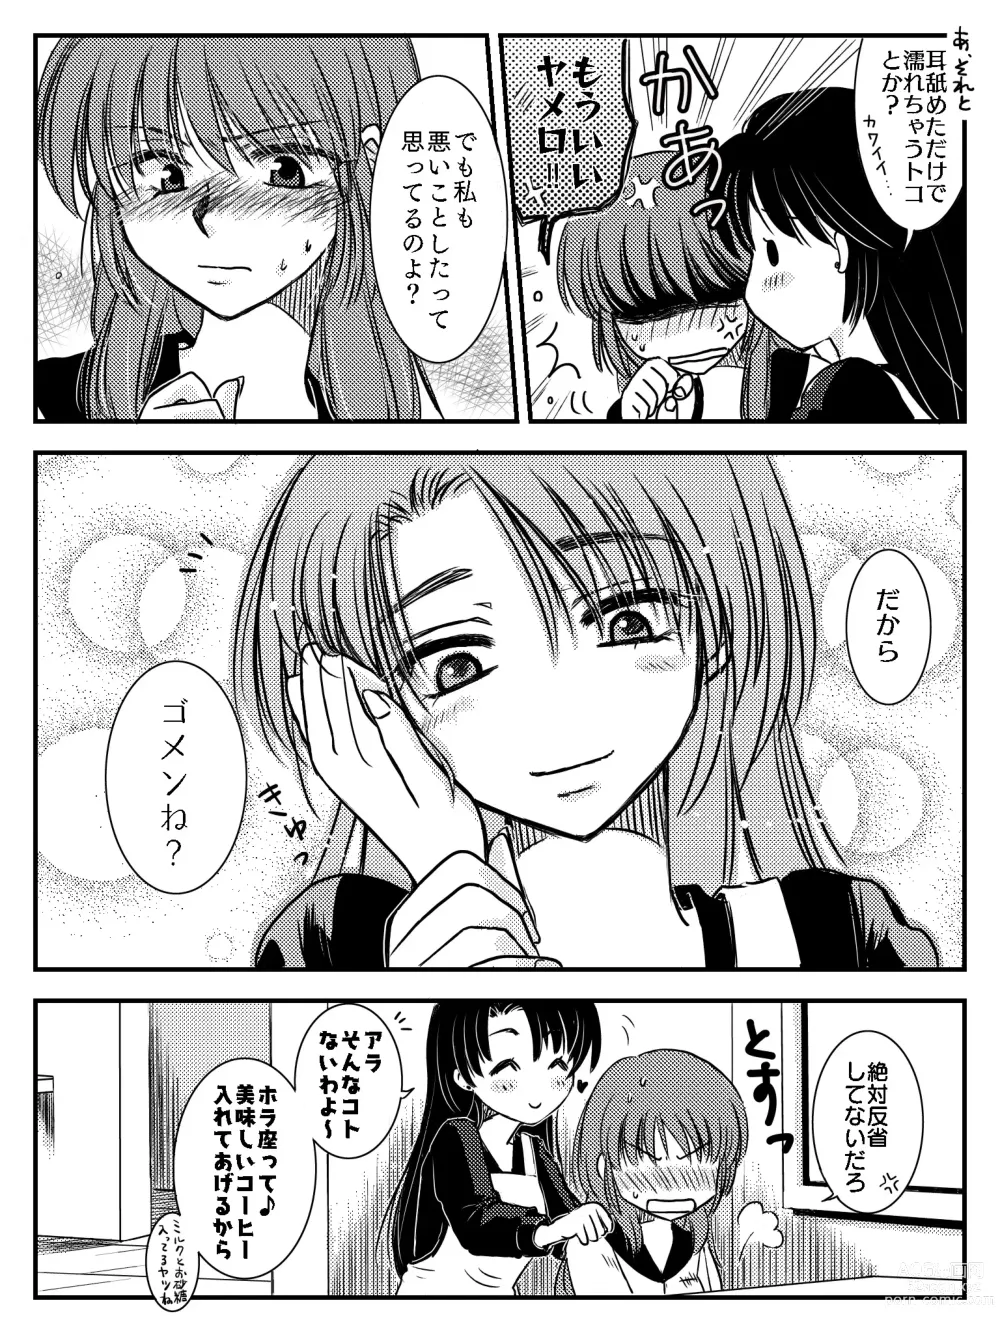 Page 24 of doujinshi LADIES NAVIGATION Episode 4